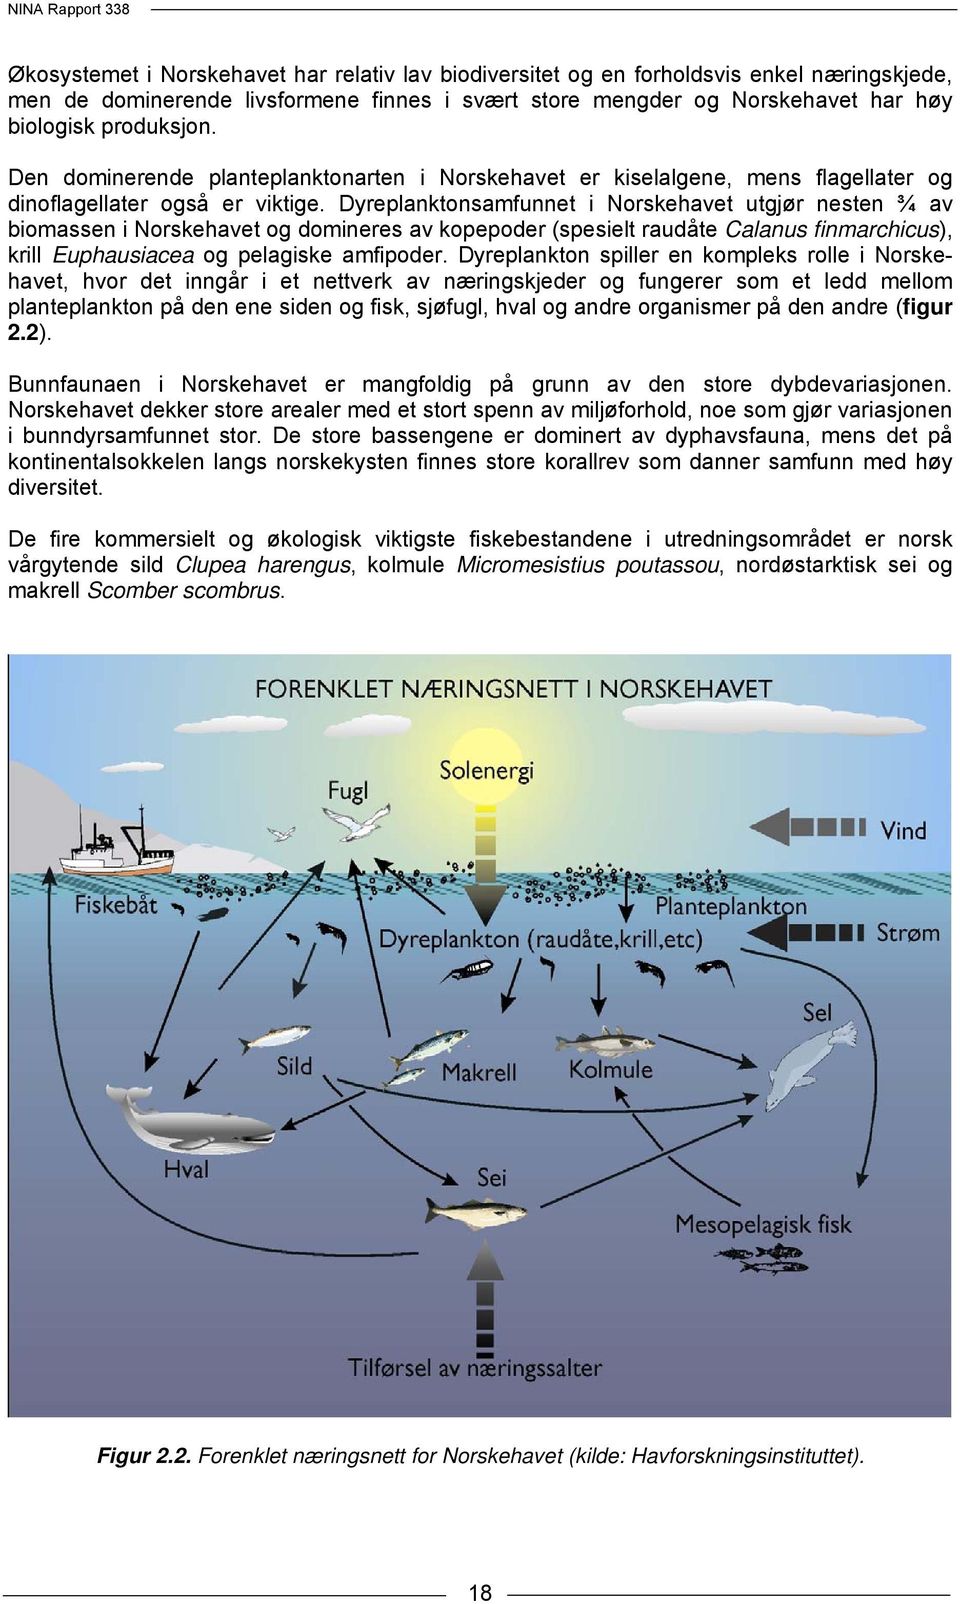 Dyreplanktonsamfunnet i Norskehavet utgjør nesten ¾ av biomassen i Norskehavet og domineres av kopepoder (spesielt raudåte Calanus finmarchicus), krill Euphausiacea og pelagiske amfipoder.